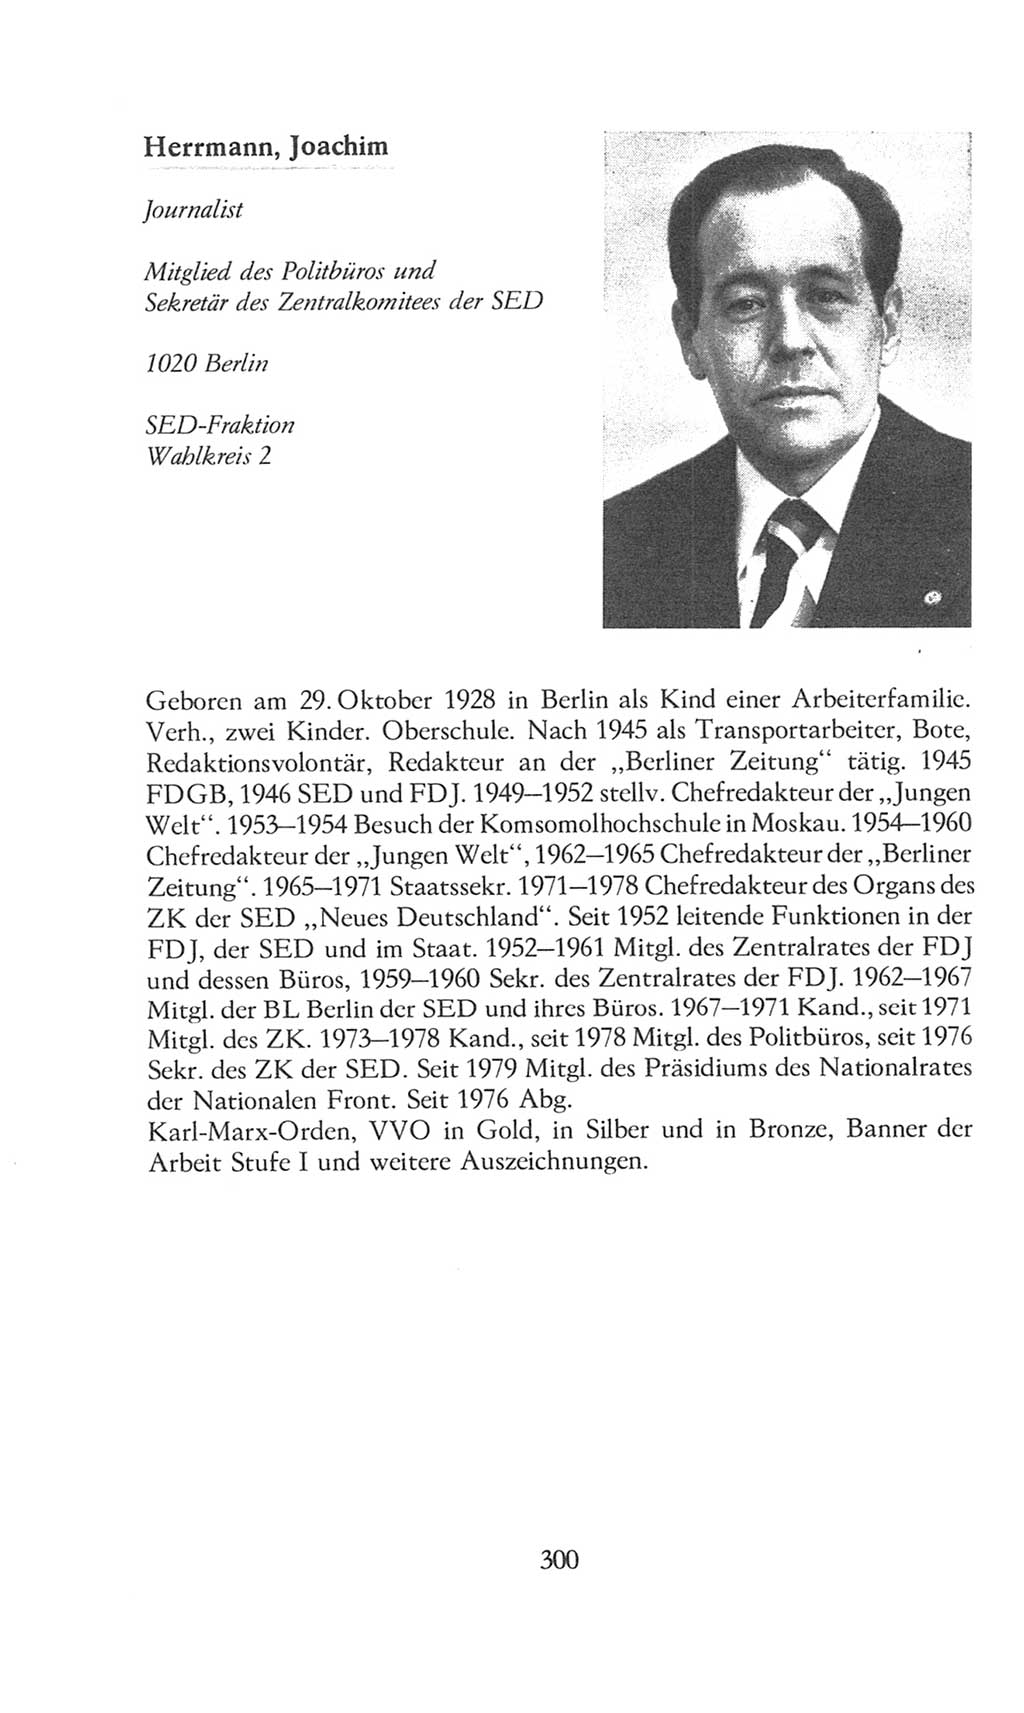 Volkskammer (VK) der Deutschen Demokratischen Republik (DDR), 8. Wahlperiode 1981-1986, Seite 300 (VK. DDR 8. WP. 1981-1986, S. 300)